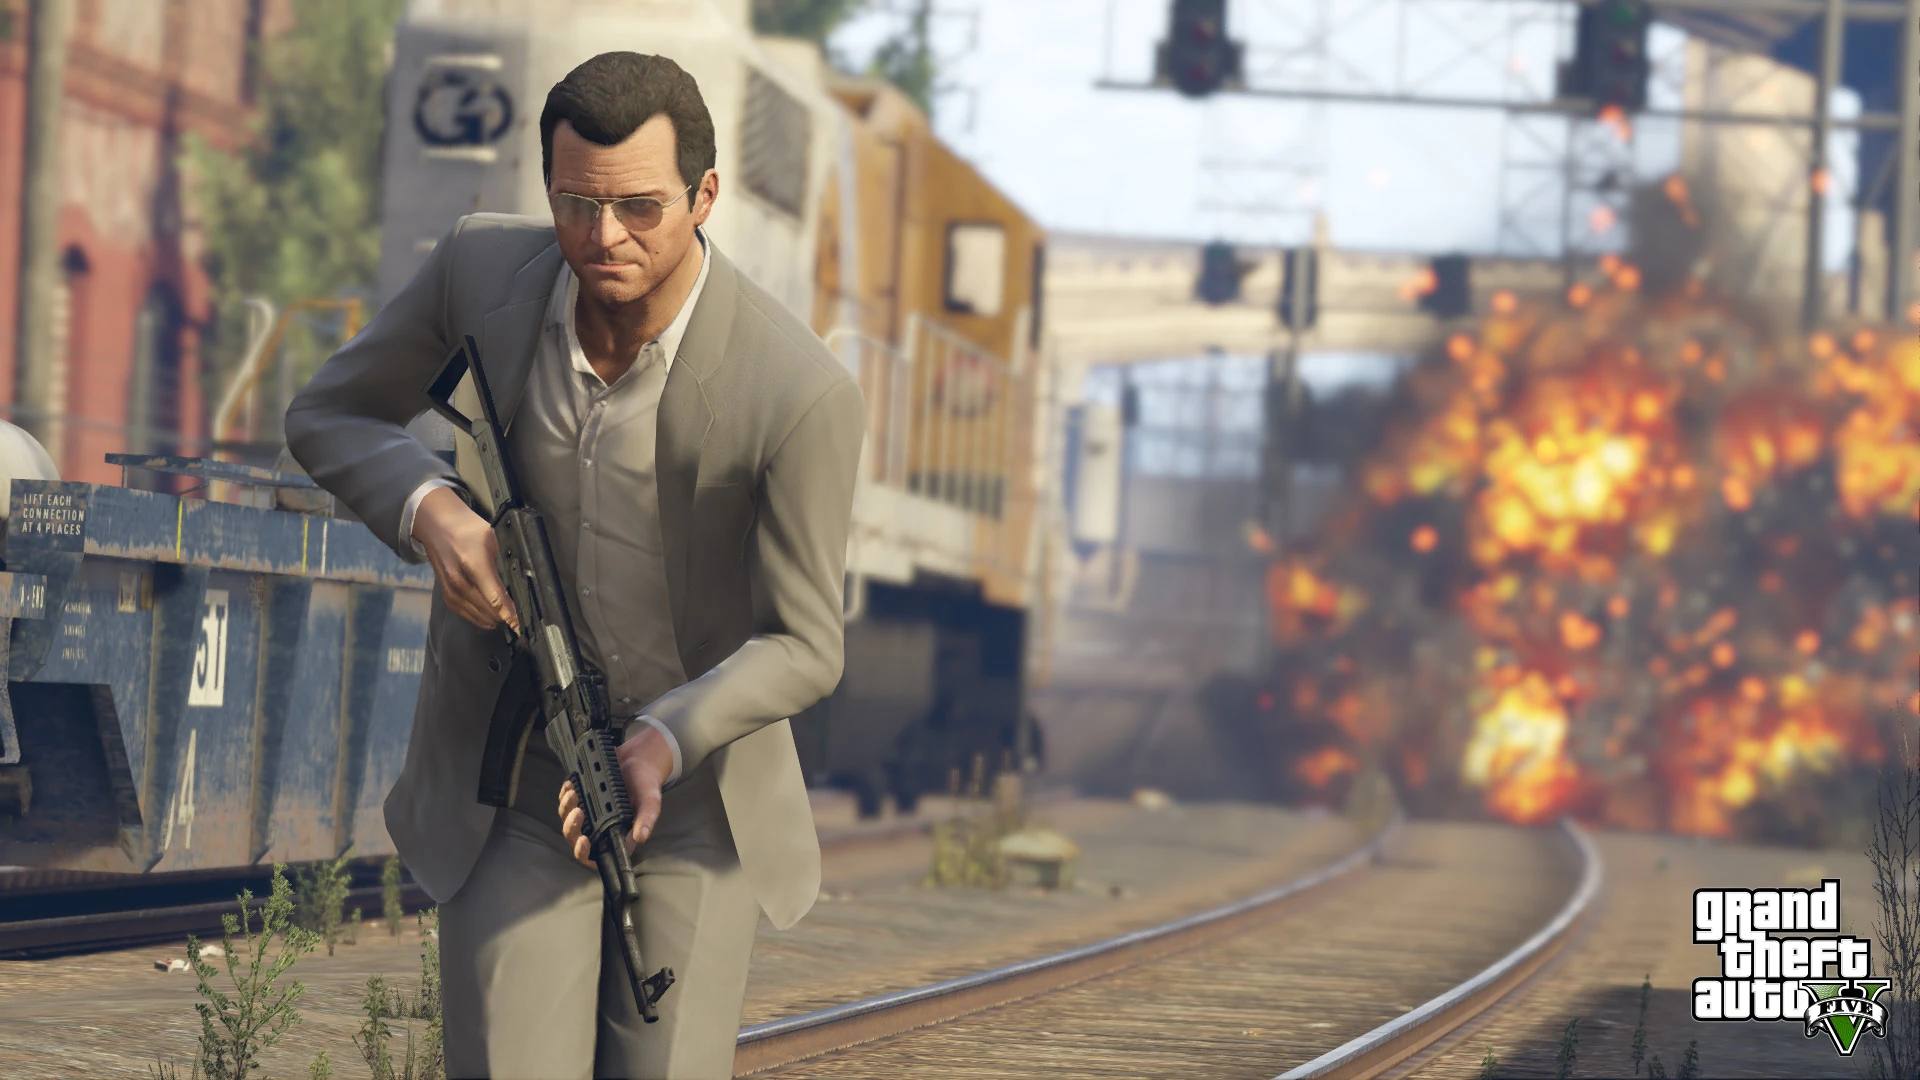 Grand Theft Auto V - PS4 Screenshot 07 - Michael